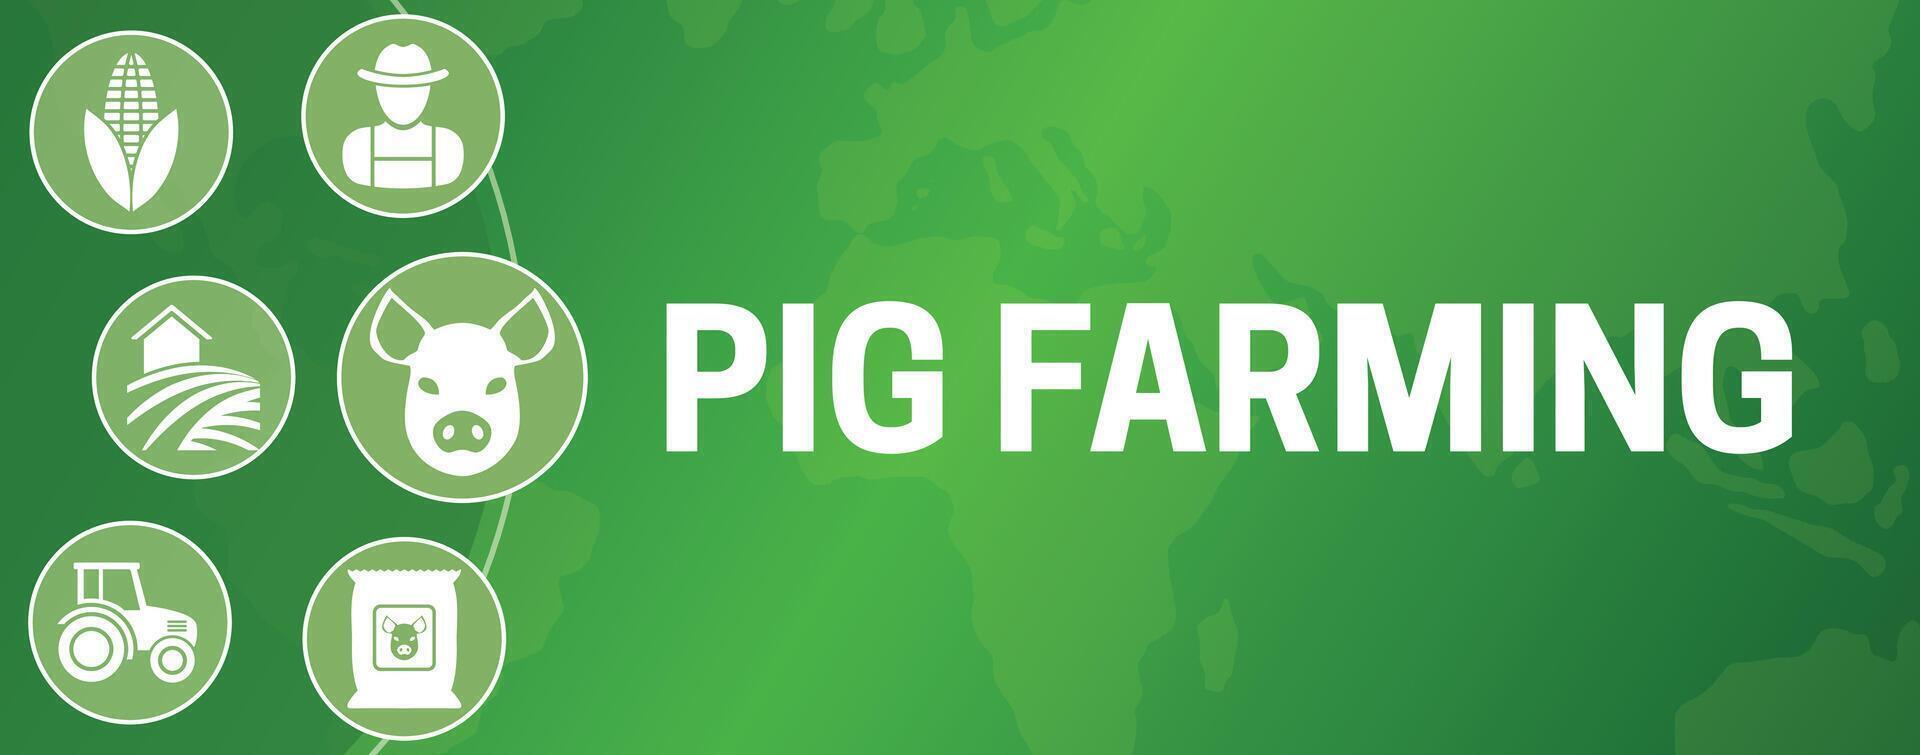 Pig Farming Illustration Banner vector